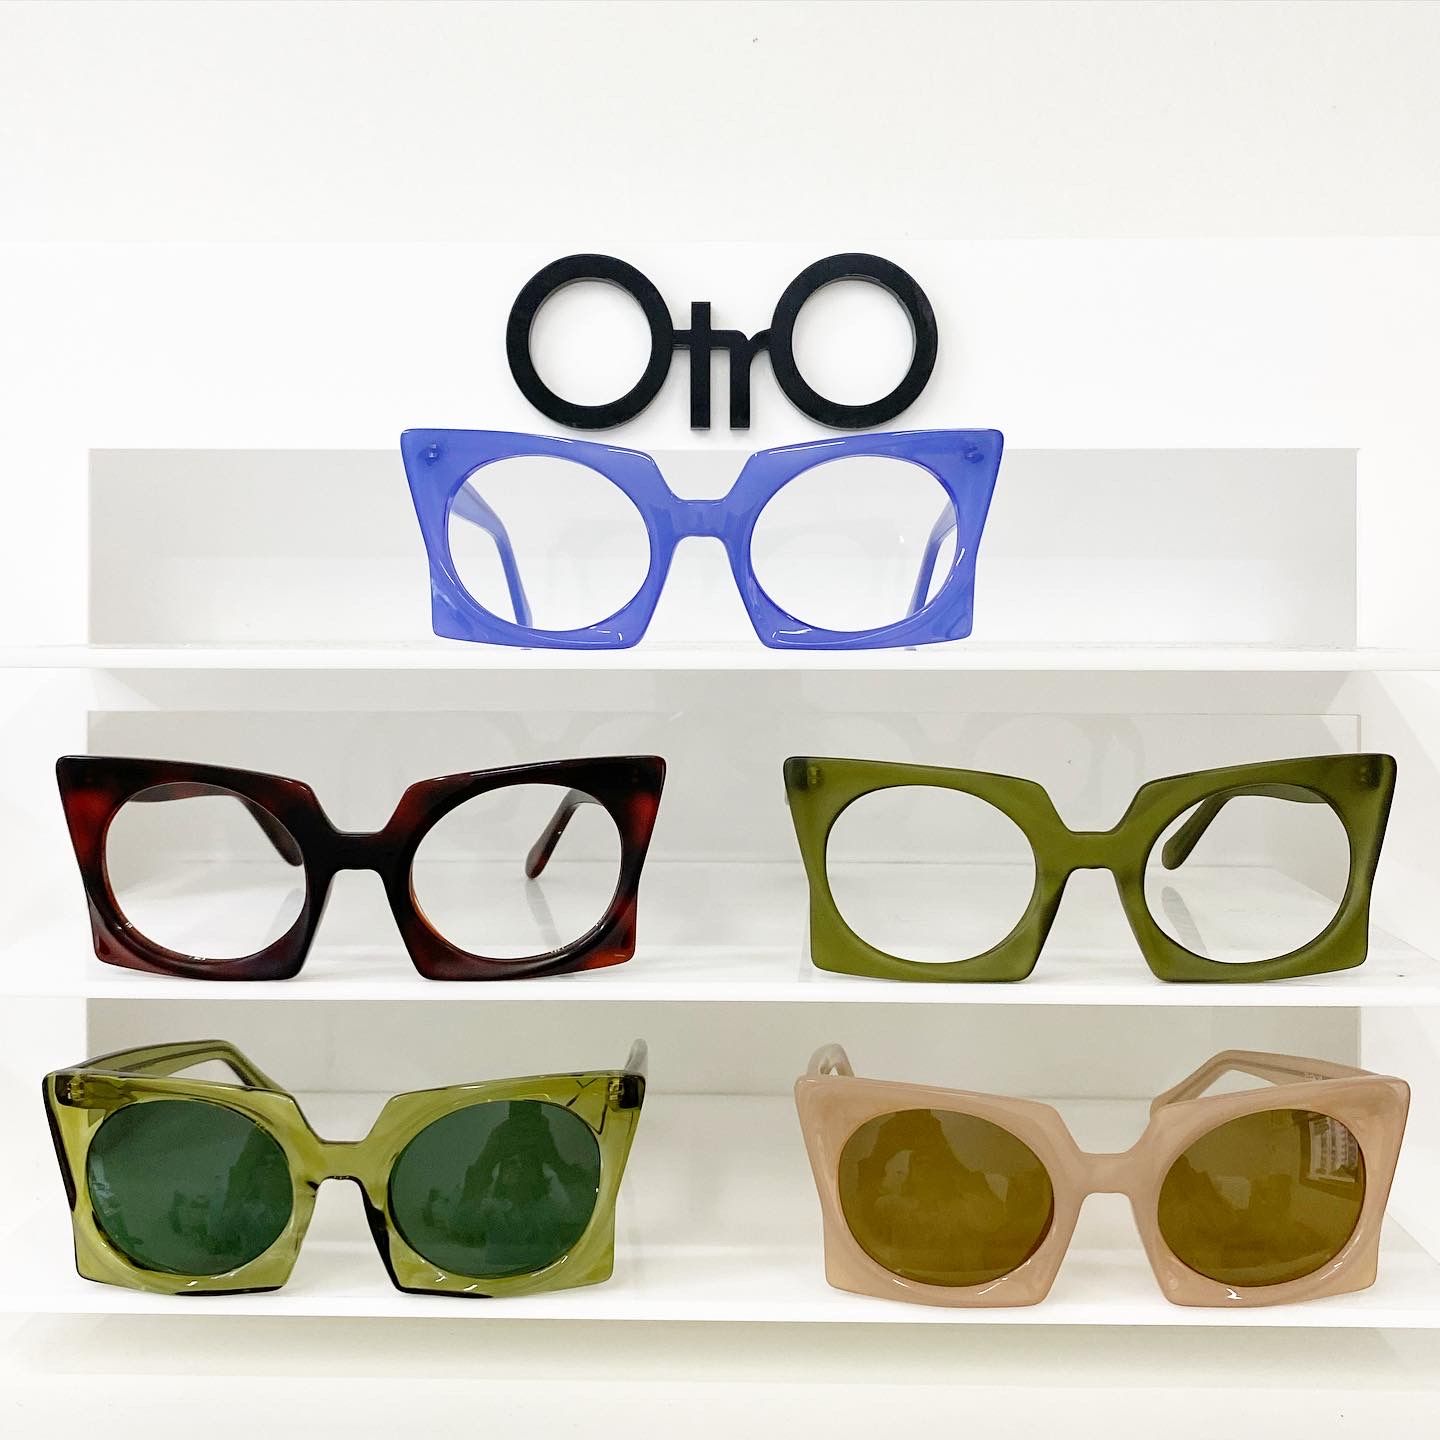 OtrO Eyewear | Erida Schaefer / Otro Eyewear - Luna